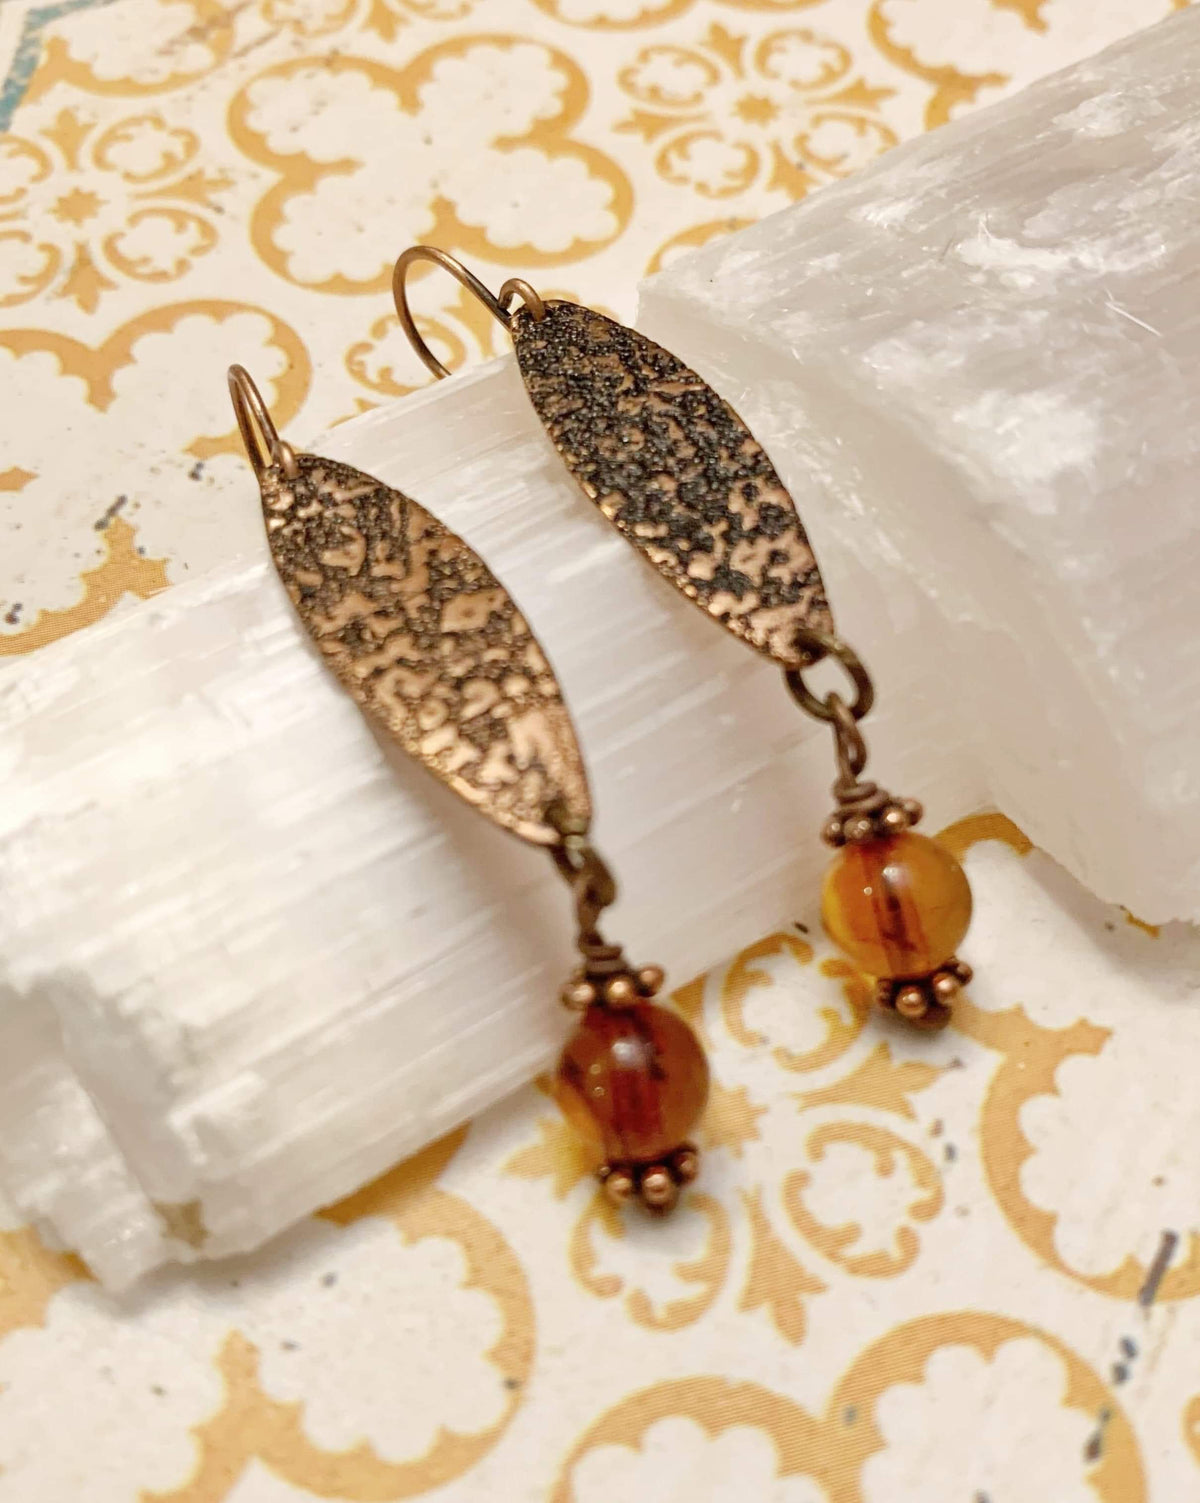 Copper and Carnelian Earrings